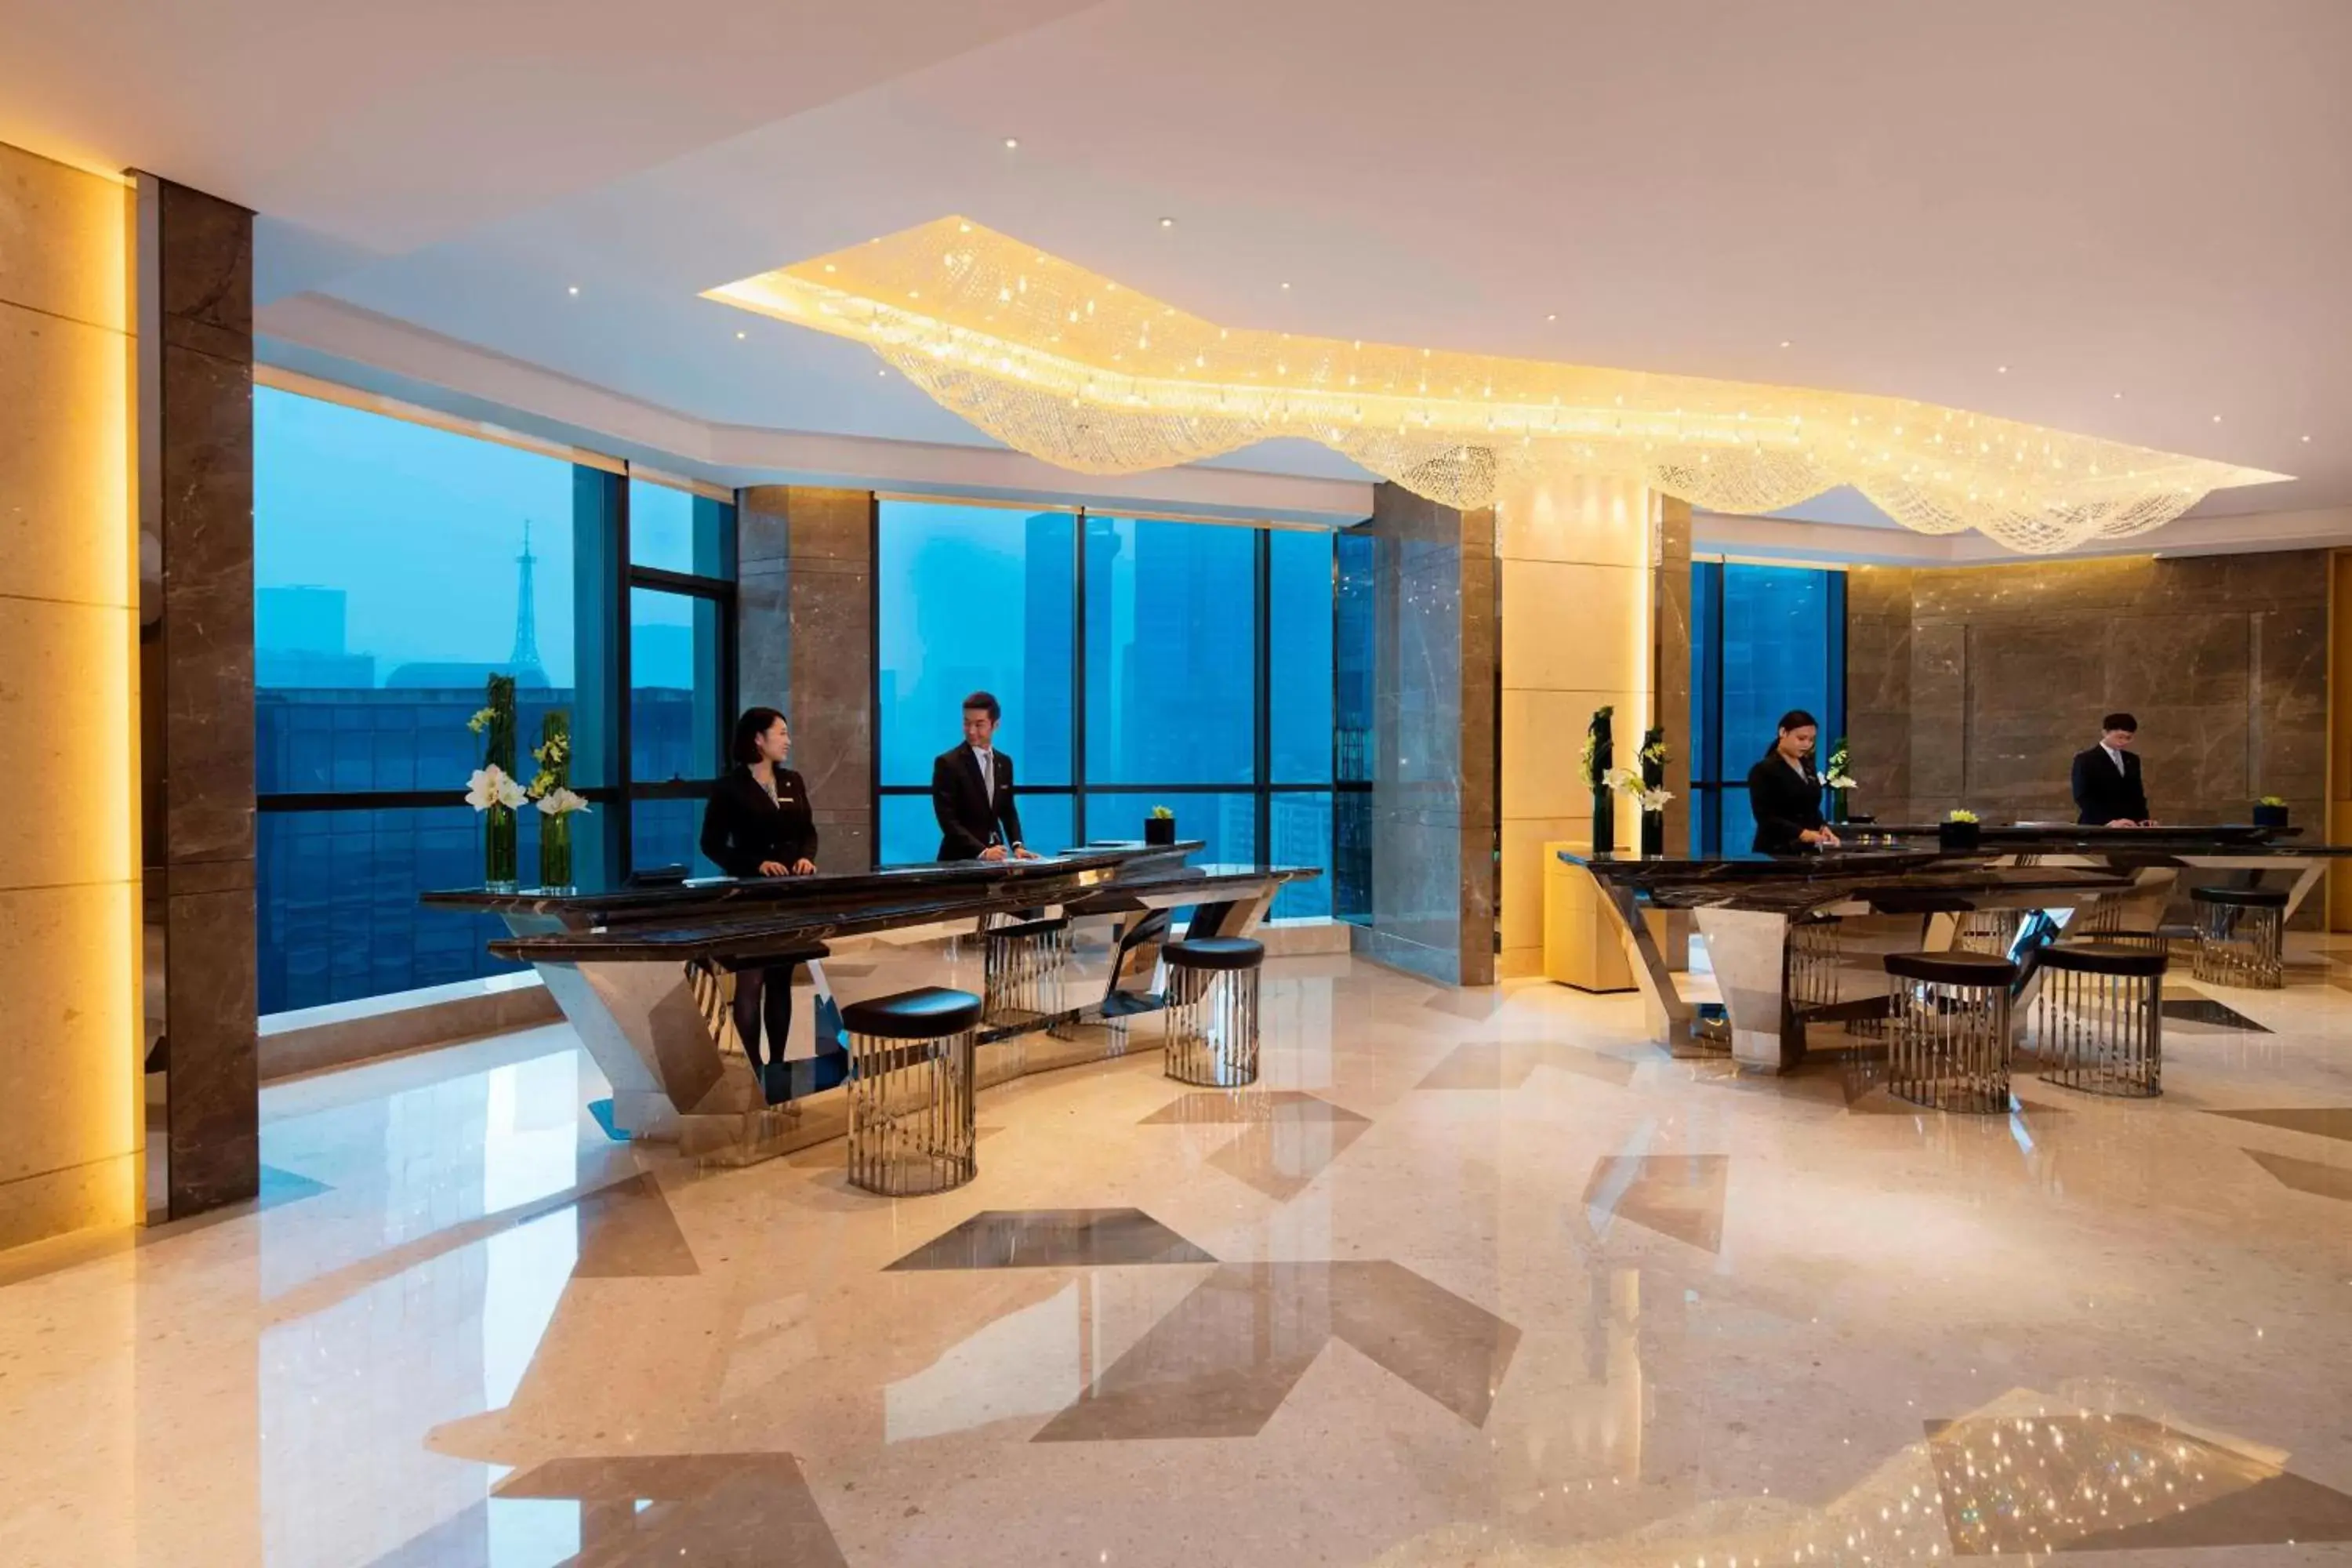 Lobby or reception in JW Marriott Hotel Chengdu